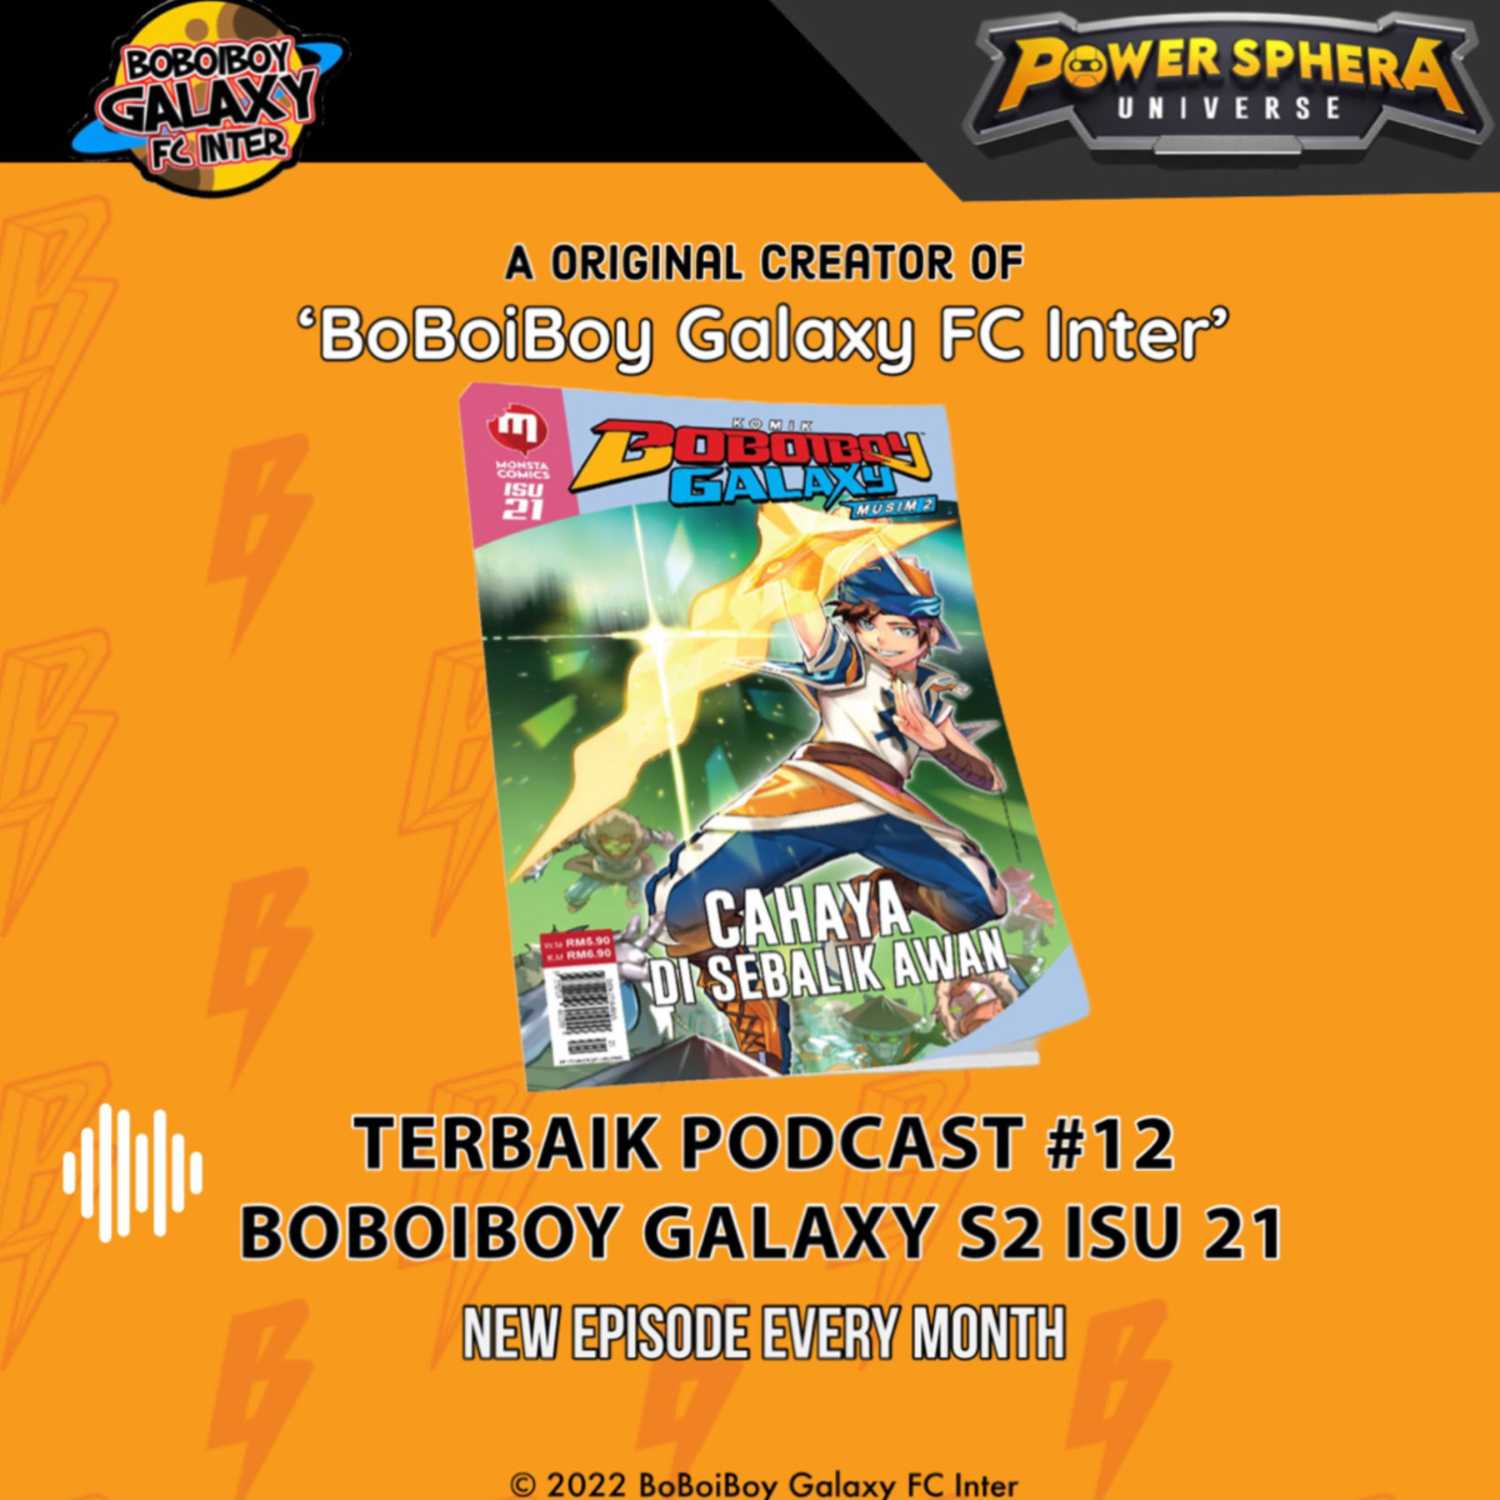 Terbaik Podcast #12 - BoBoiBoy Galaxy Season 2 Isu 21 Spoiler